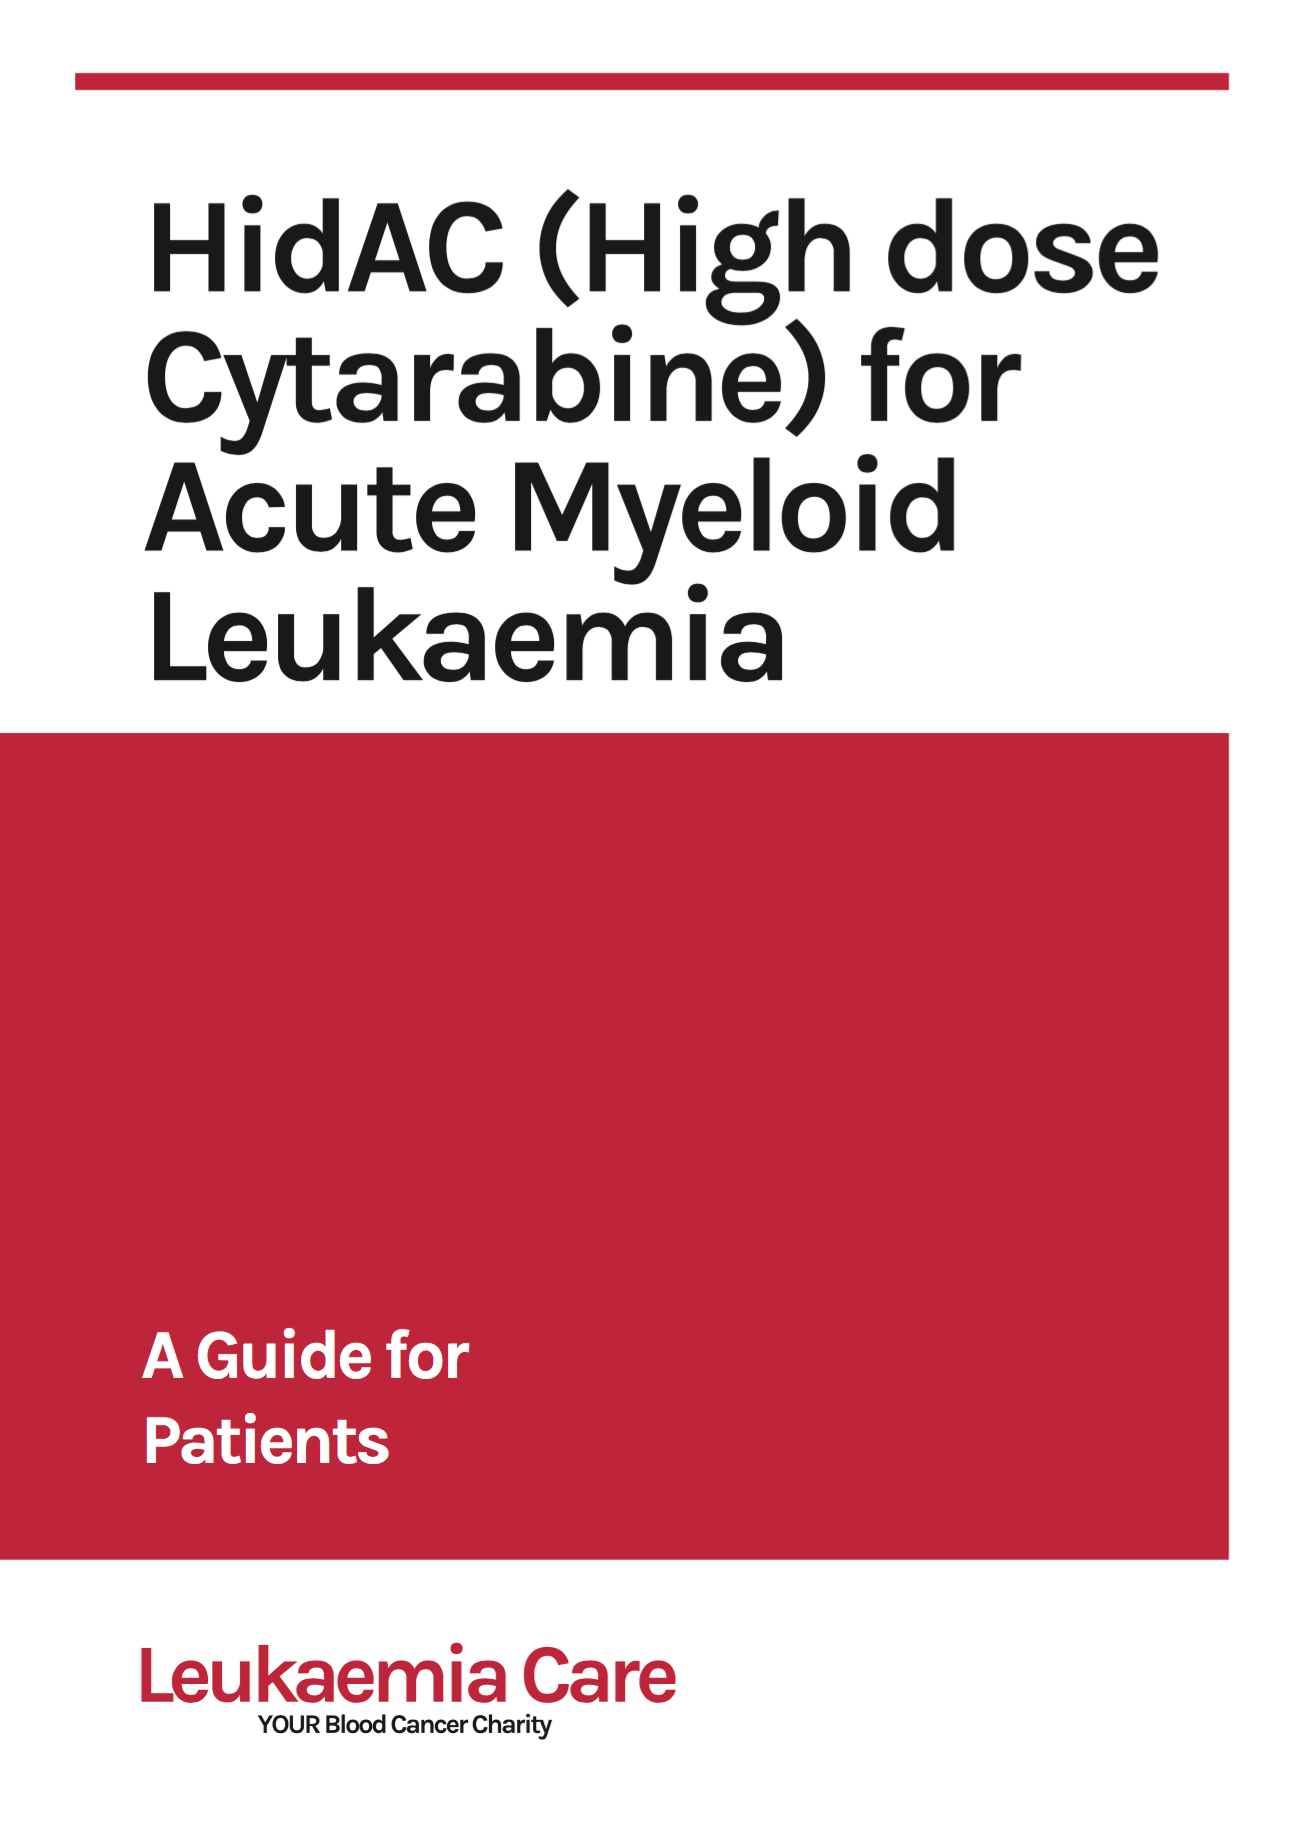 HidAC (High dose) for Acute Myeloid Leukaemia